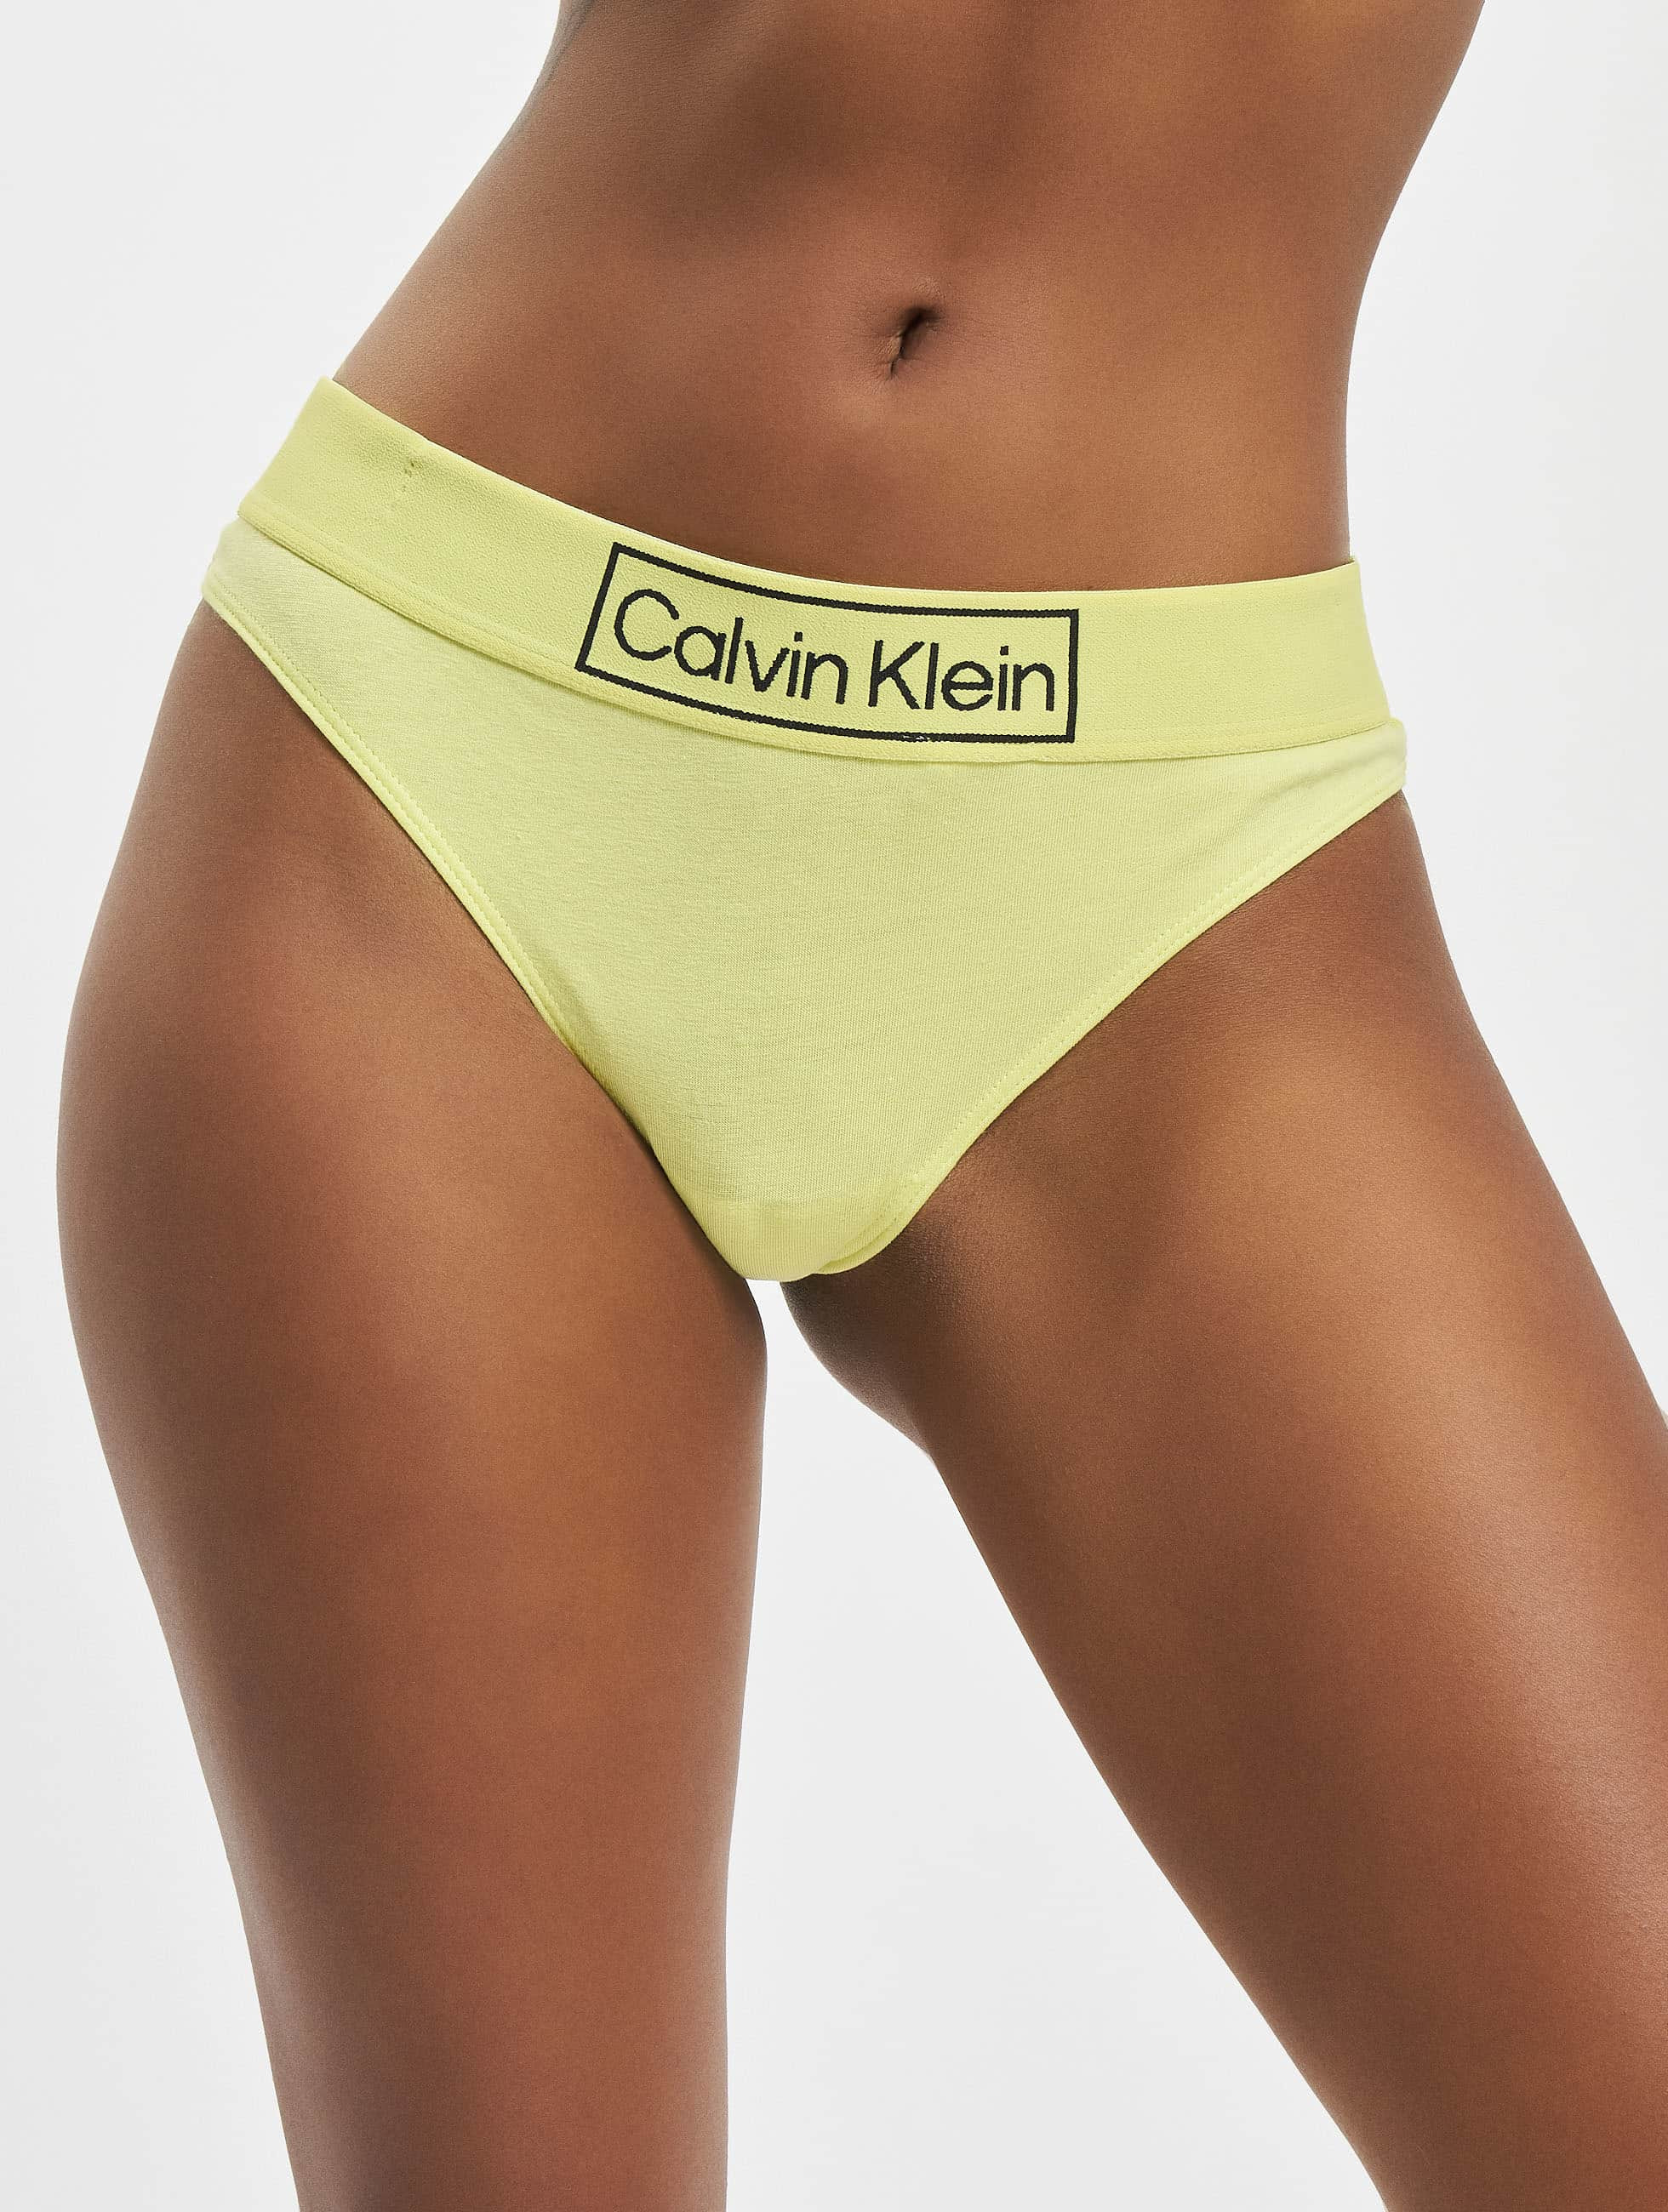 Calvin Klein Underwear / Beachwear / Underwear Underwear in green 972451